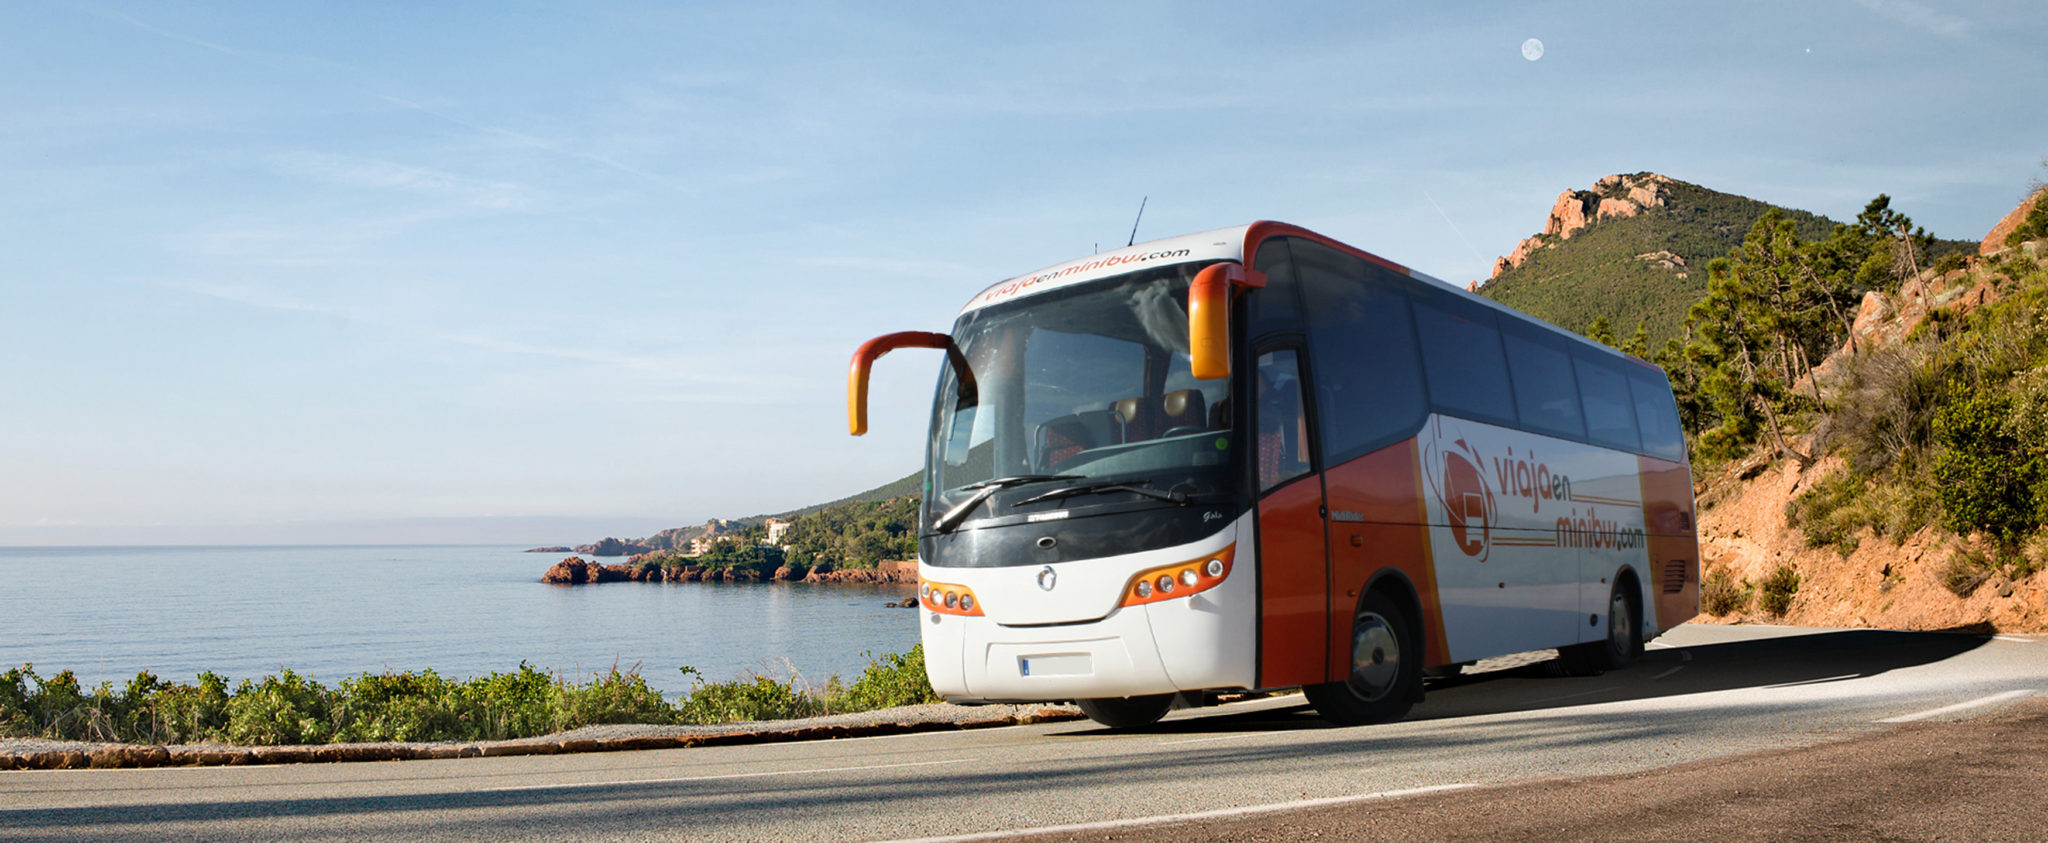 Shuttle bus Malaga